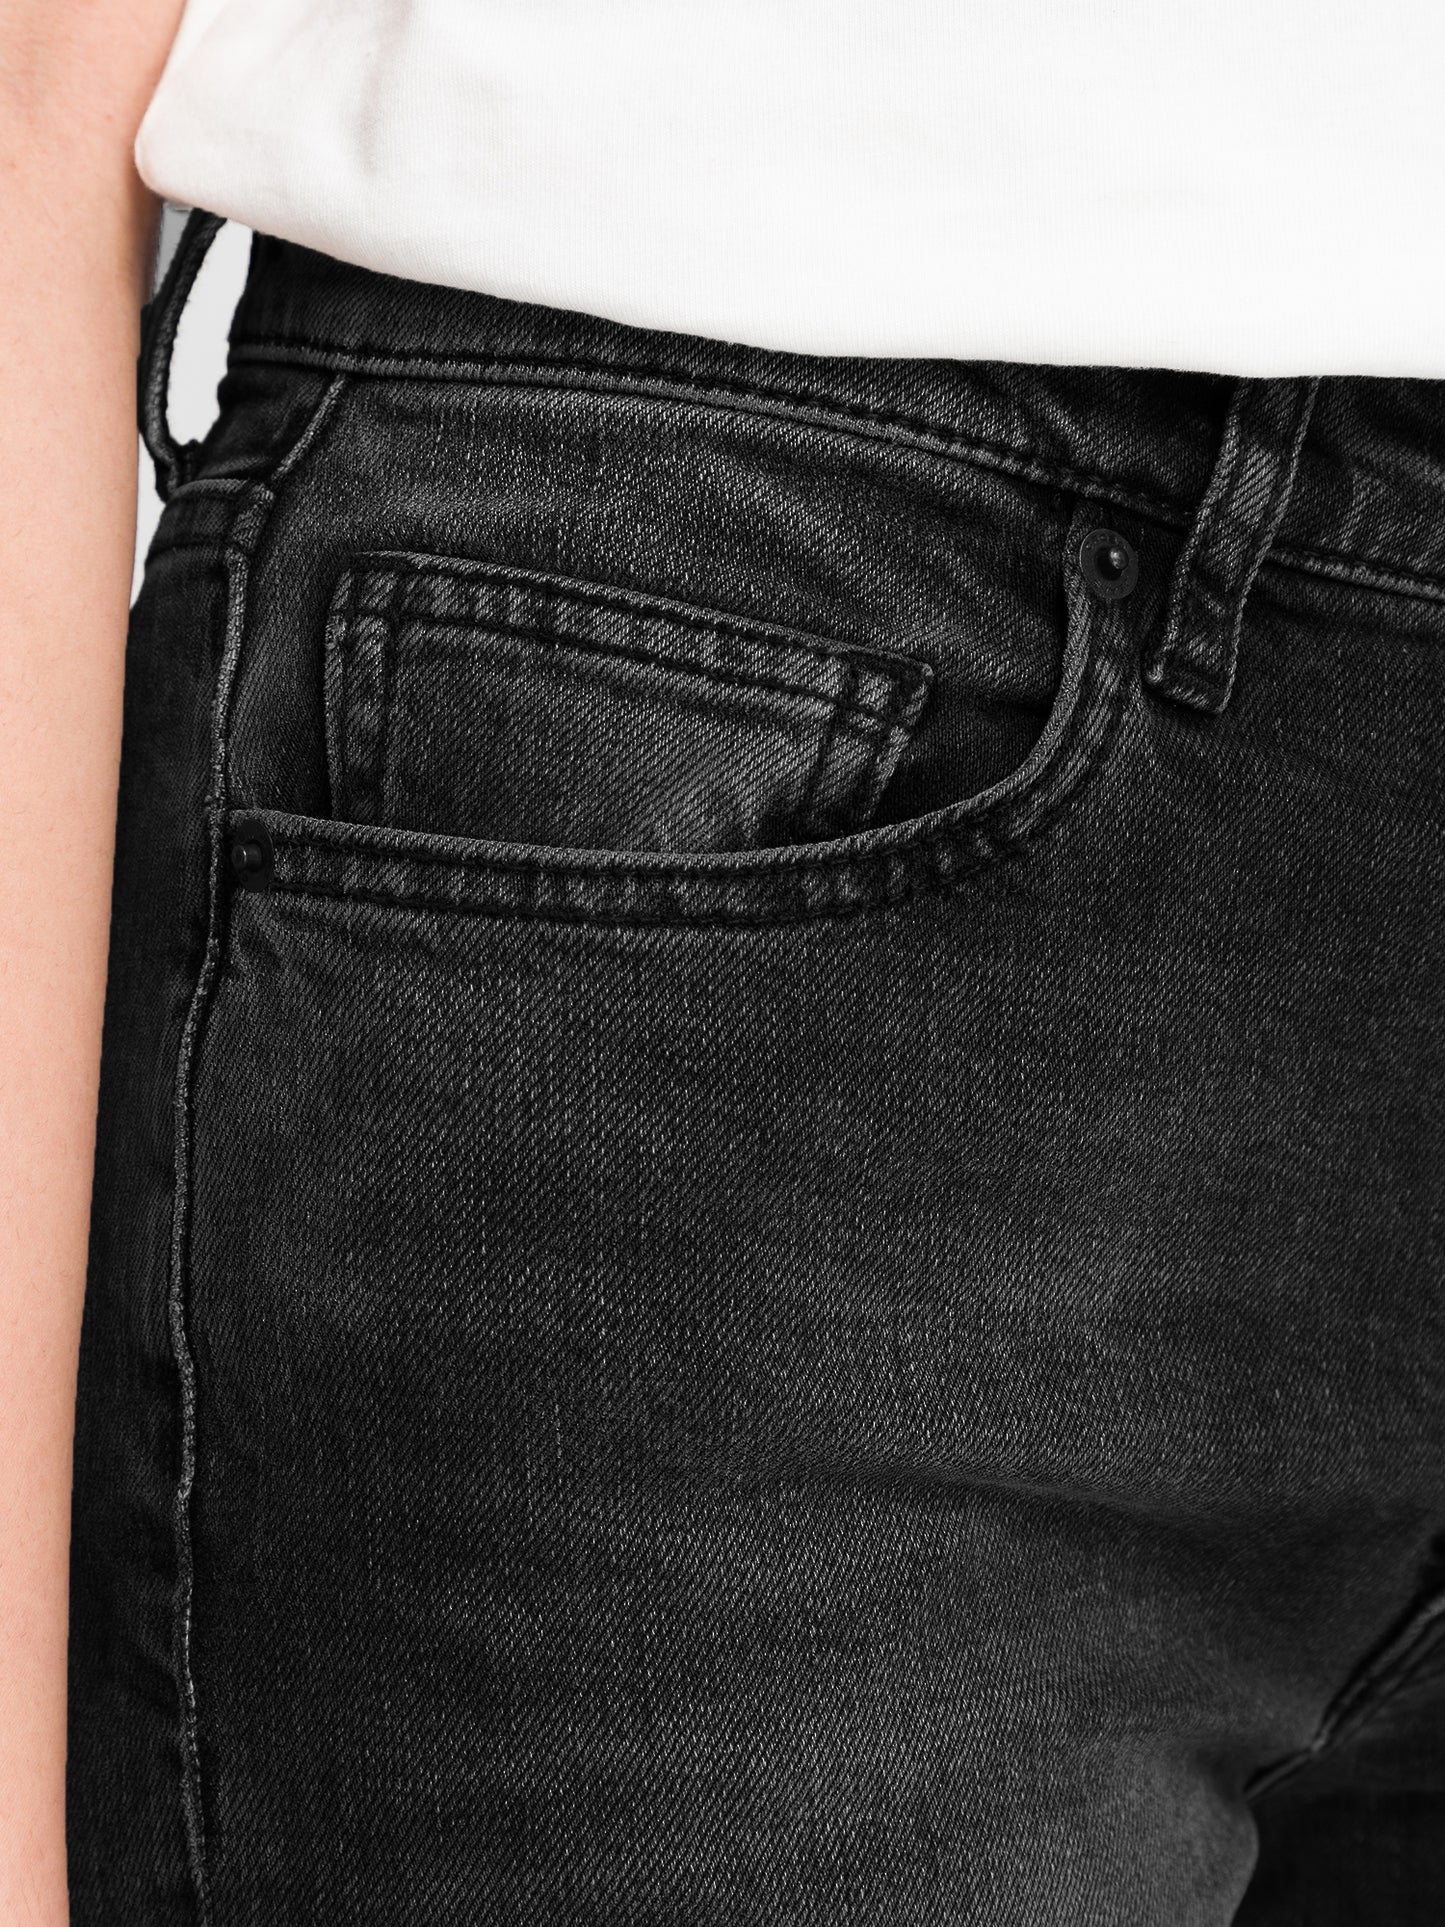 Marisa Damen Jeans Regular Fit High Waist Straight Leg dunkelgrau